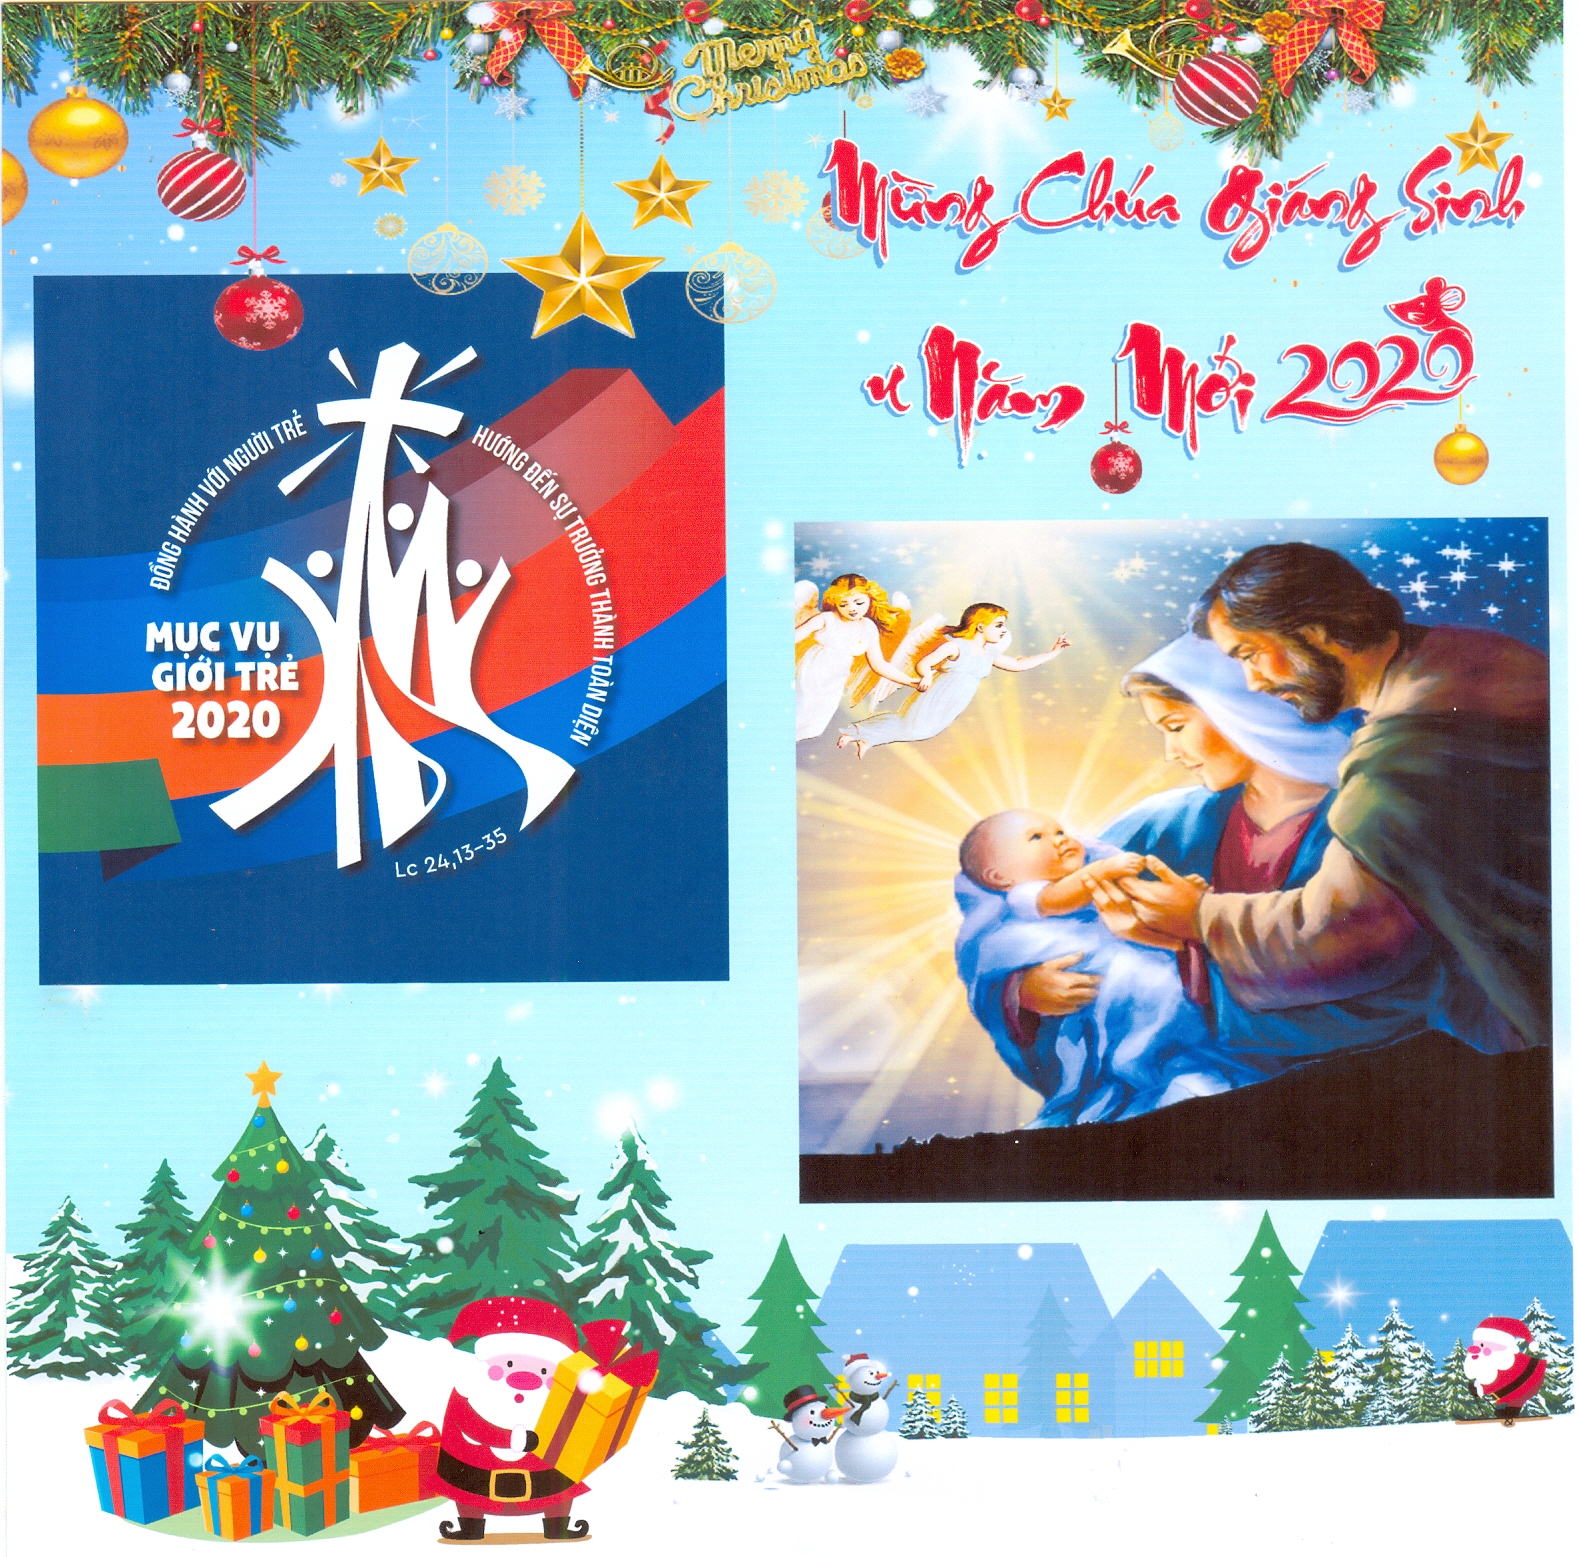 Chỉ còn chưa đầy 2 năm nữa, thiệp Giáng Sinh Công Giáo 2024 sẽ tràn ngập sắc màu, thi vị và ý nghĩa. Hãy cùng chờ đón một mùa Noel đầy cảm xúc và tình yêu thương đến từ Chúa.